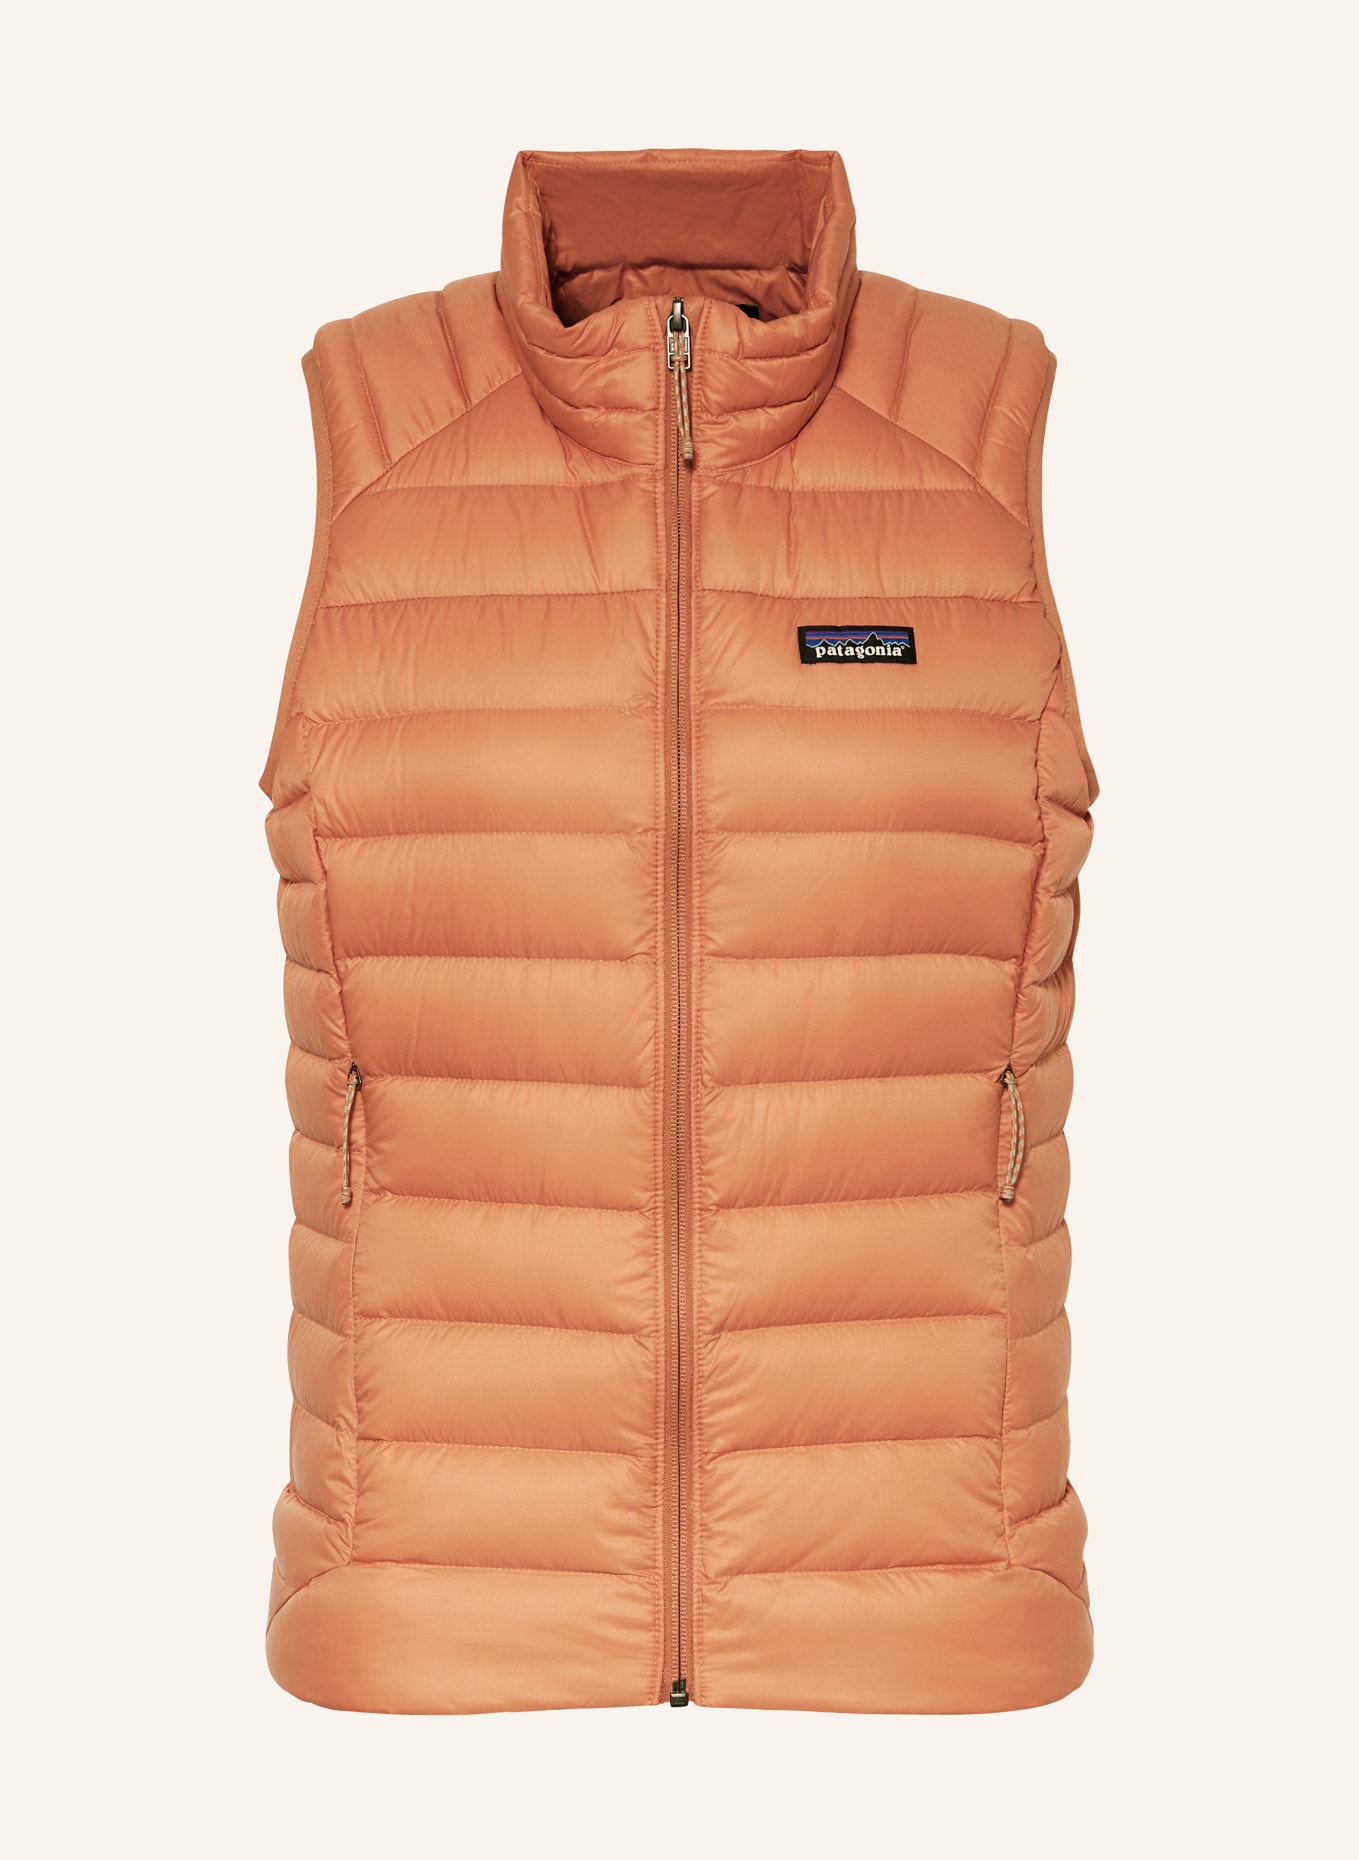 patagonia Lightweight down vest, Color: LIGHT ORANGE (Image 1)